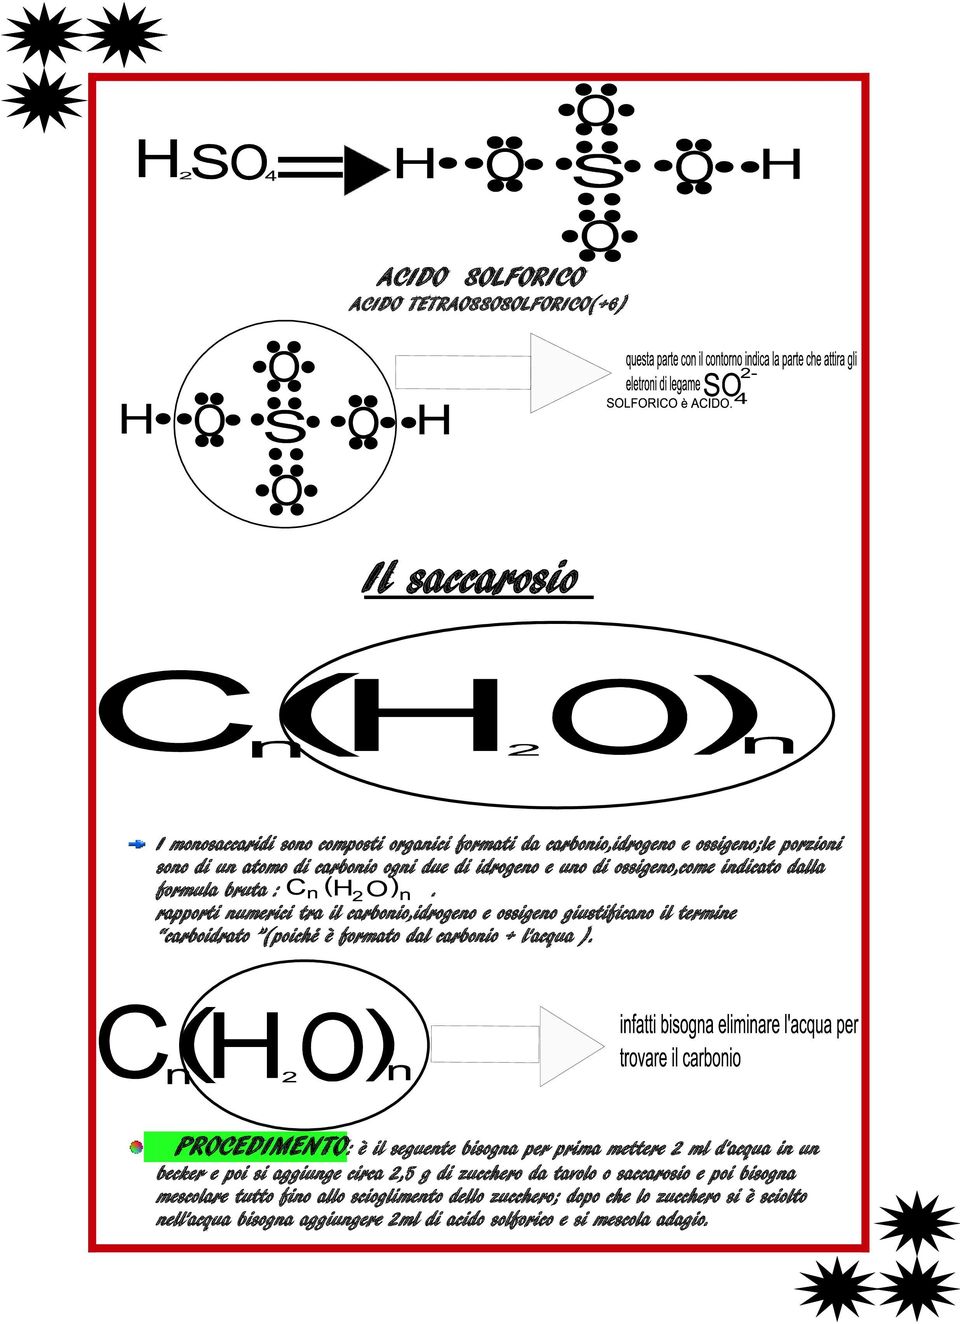 rapporti numerici tra il carbonio,idrogeno e ossigeno giustificano il termine carboidrato (poiché è formato dal carbonio + l'acqua ).